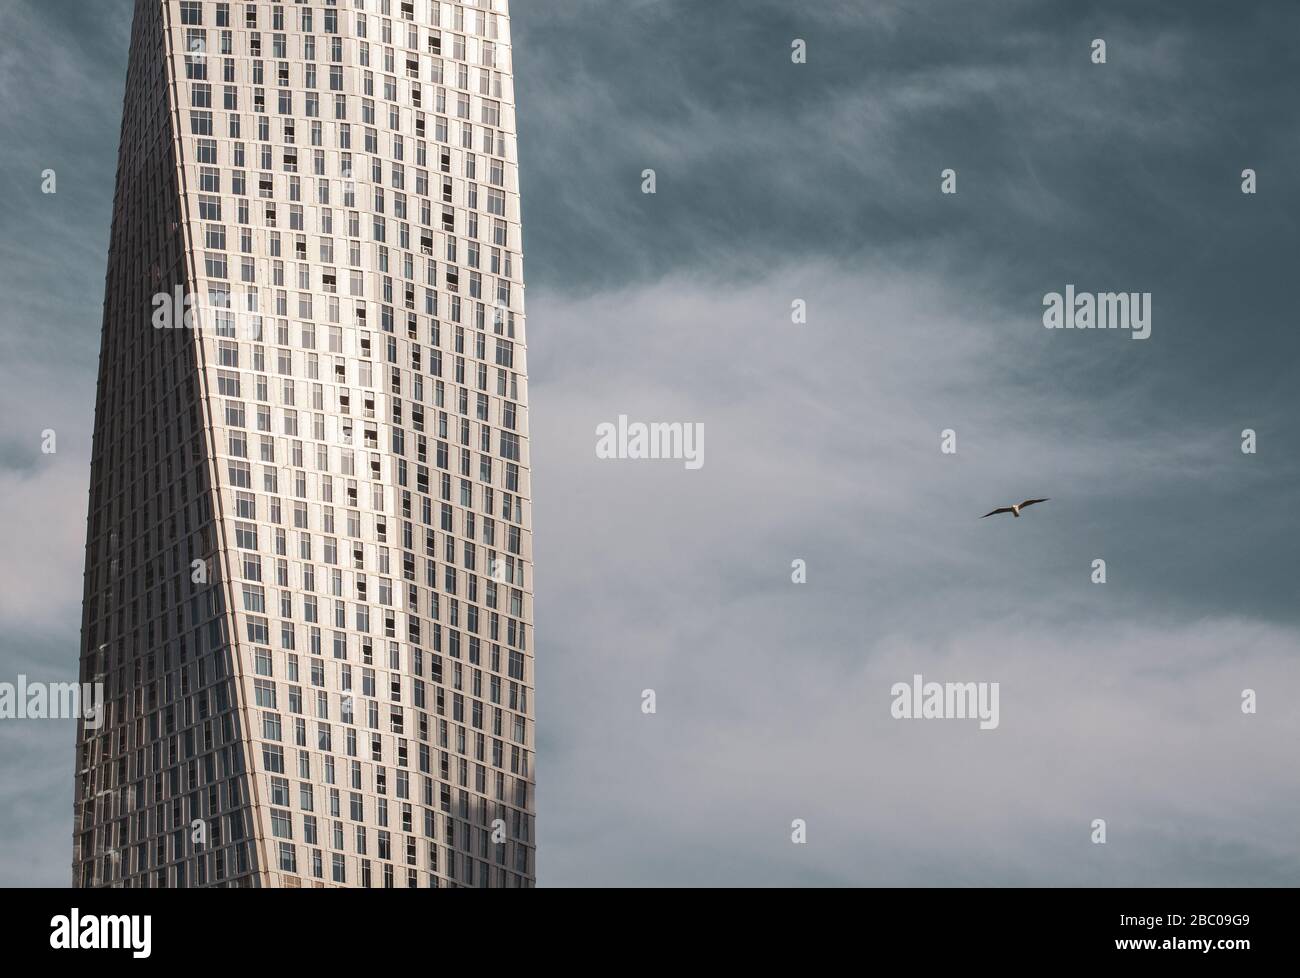 Detail des Cayan Tower in Dubai gegen den blauen Himmel und einen Vogel fliegen. Stockfoto